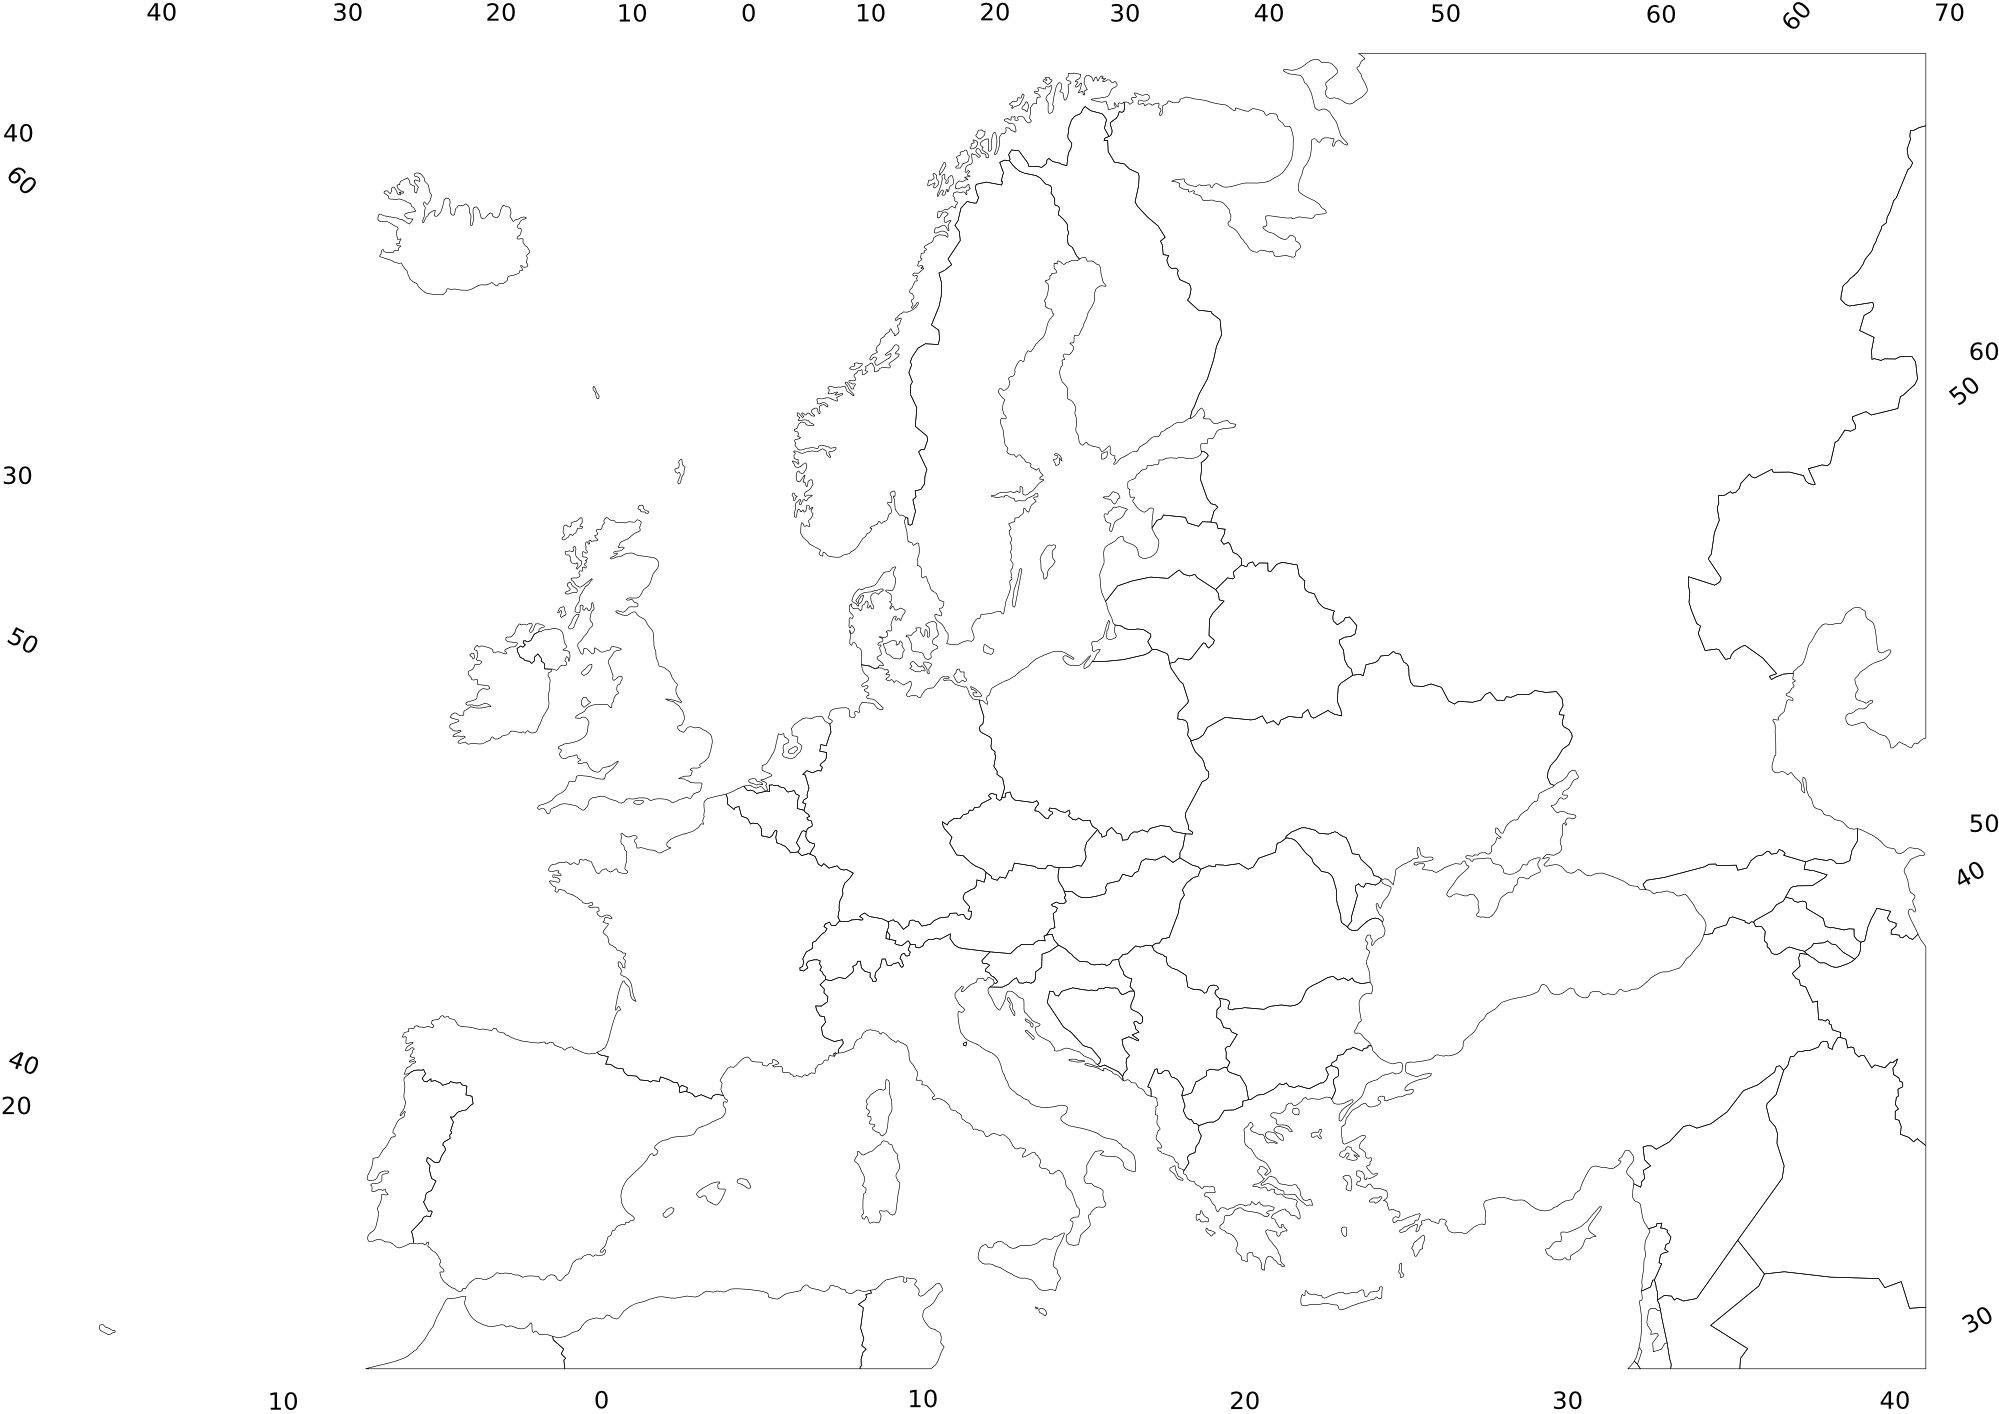 Karte Europa Ohne Beschriftung - kinderbilder.download | kinderbilder.download